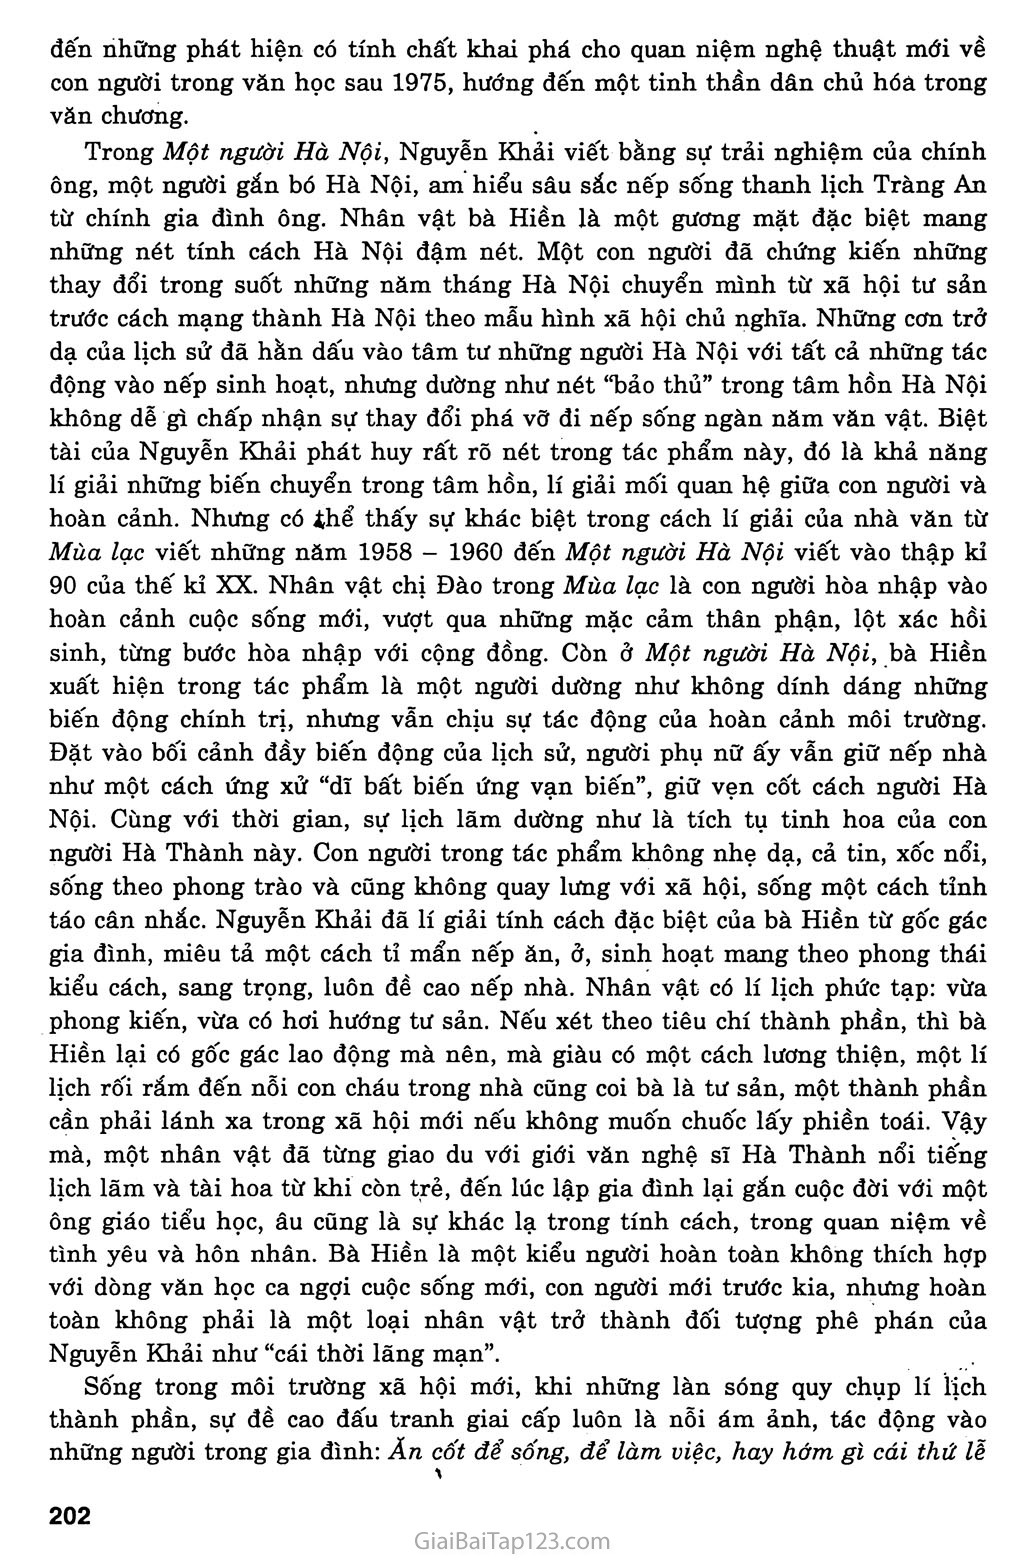 Một người Hà Nội (Nguyễn Khải, 1990) trang 7